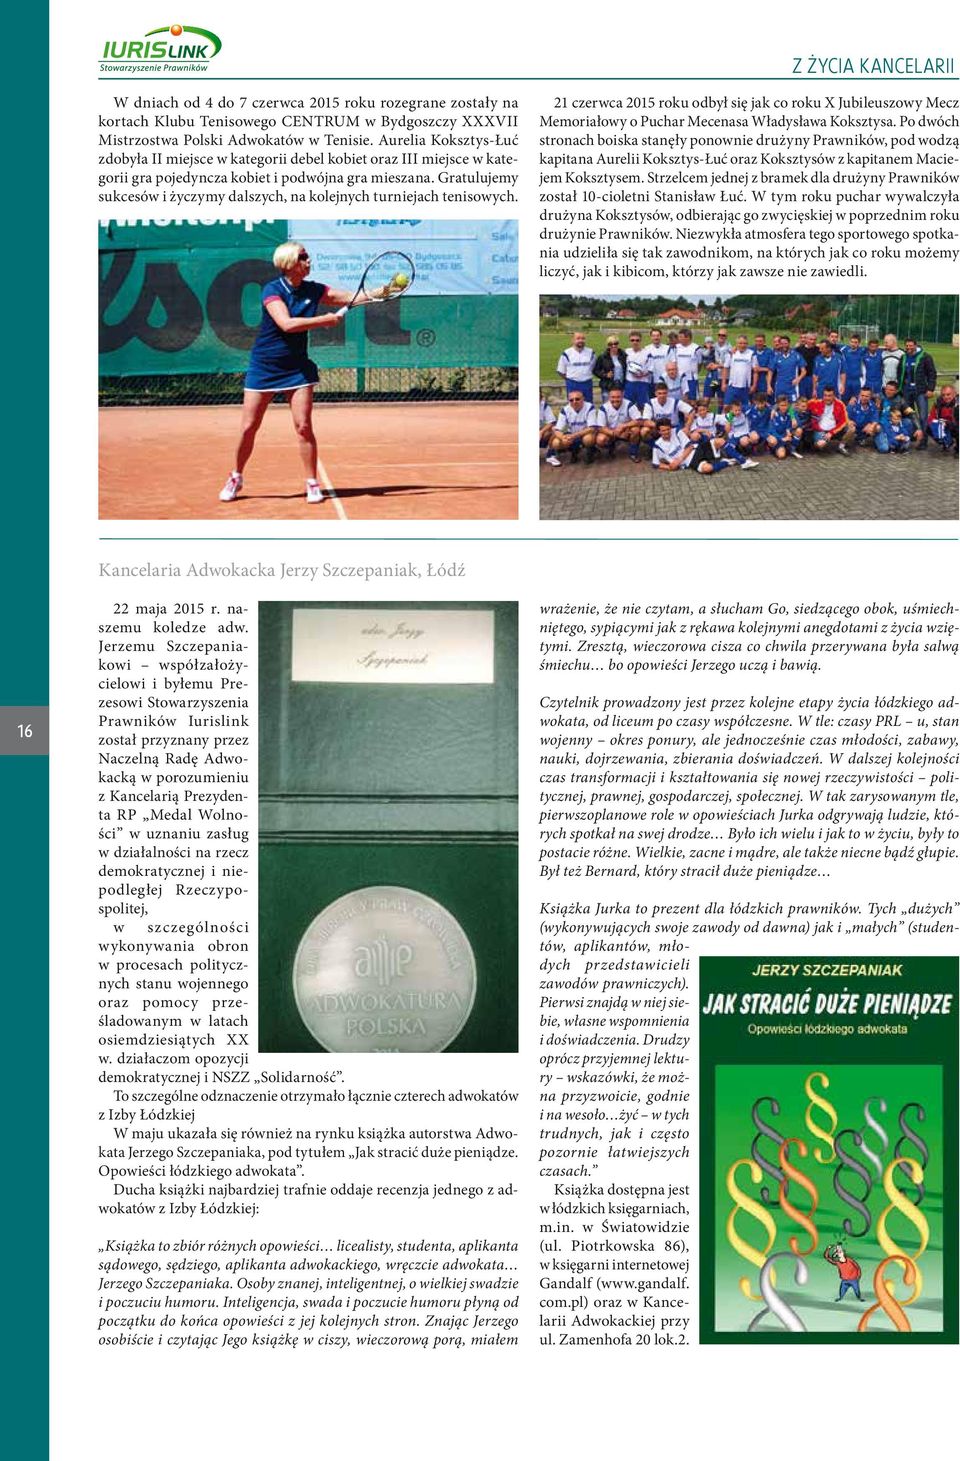 Gratulujemy sukcesów i życzymy dalszych, na kolejnych turniejach tenisowych. 21 czerwca 2015 roku odbył się jak co roku X Jubileuszowy Mecz Memoriałowy o Puchar Mecenasa Władysława Koksztysa.